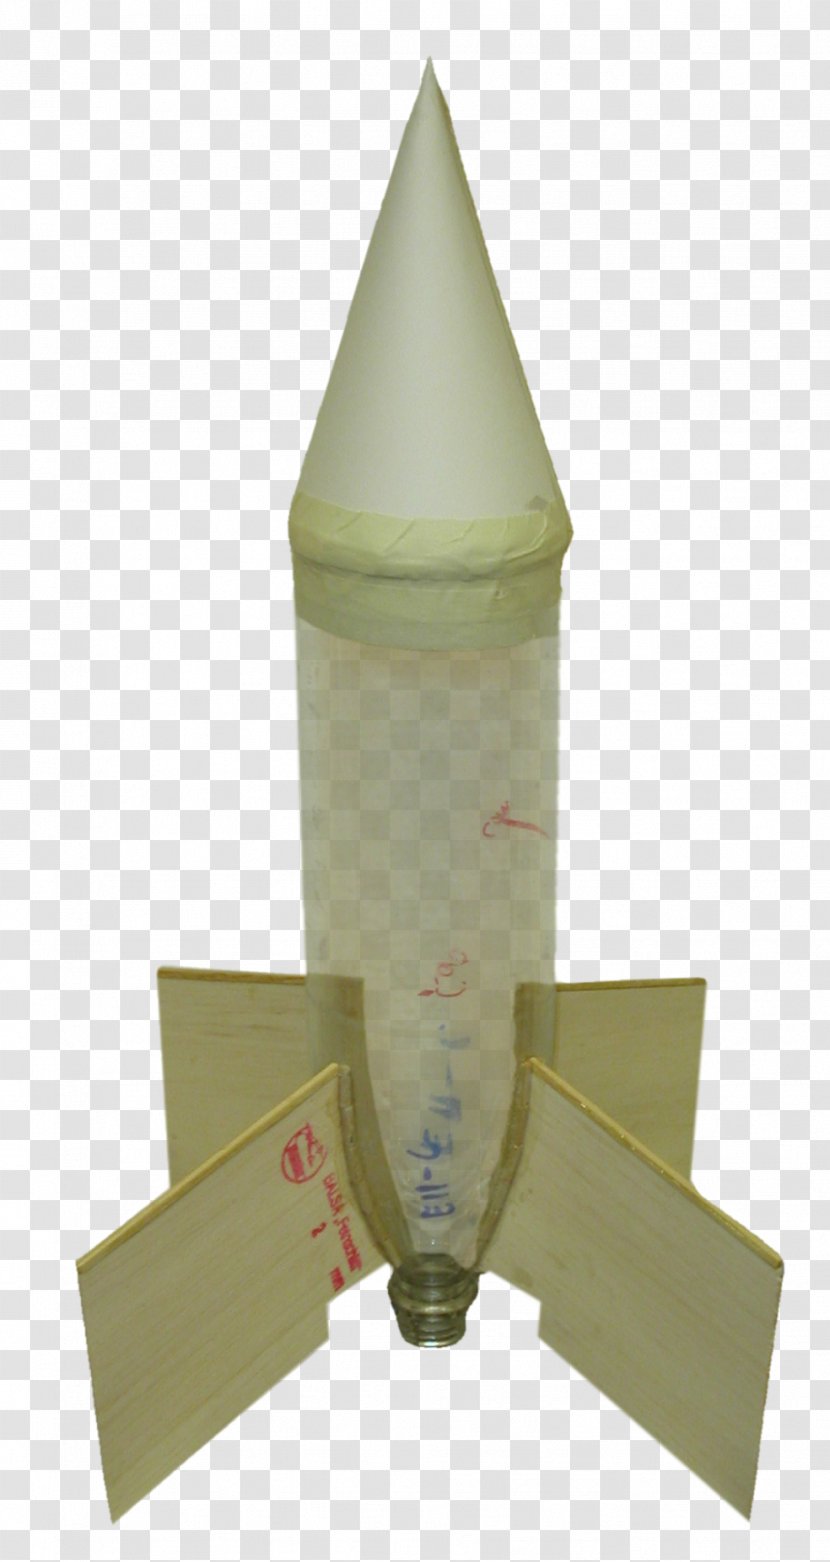 Water Rocket Bottle - Soyuz - Rockets Transparent PNG